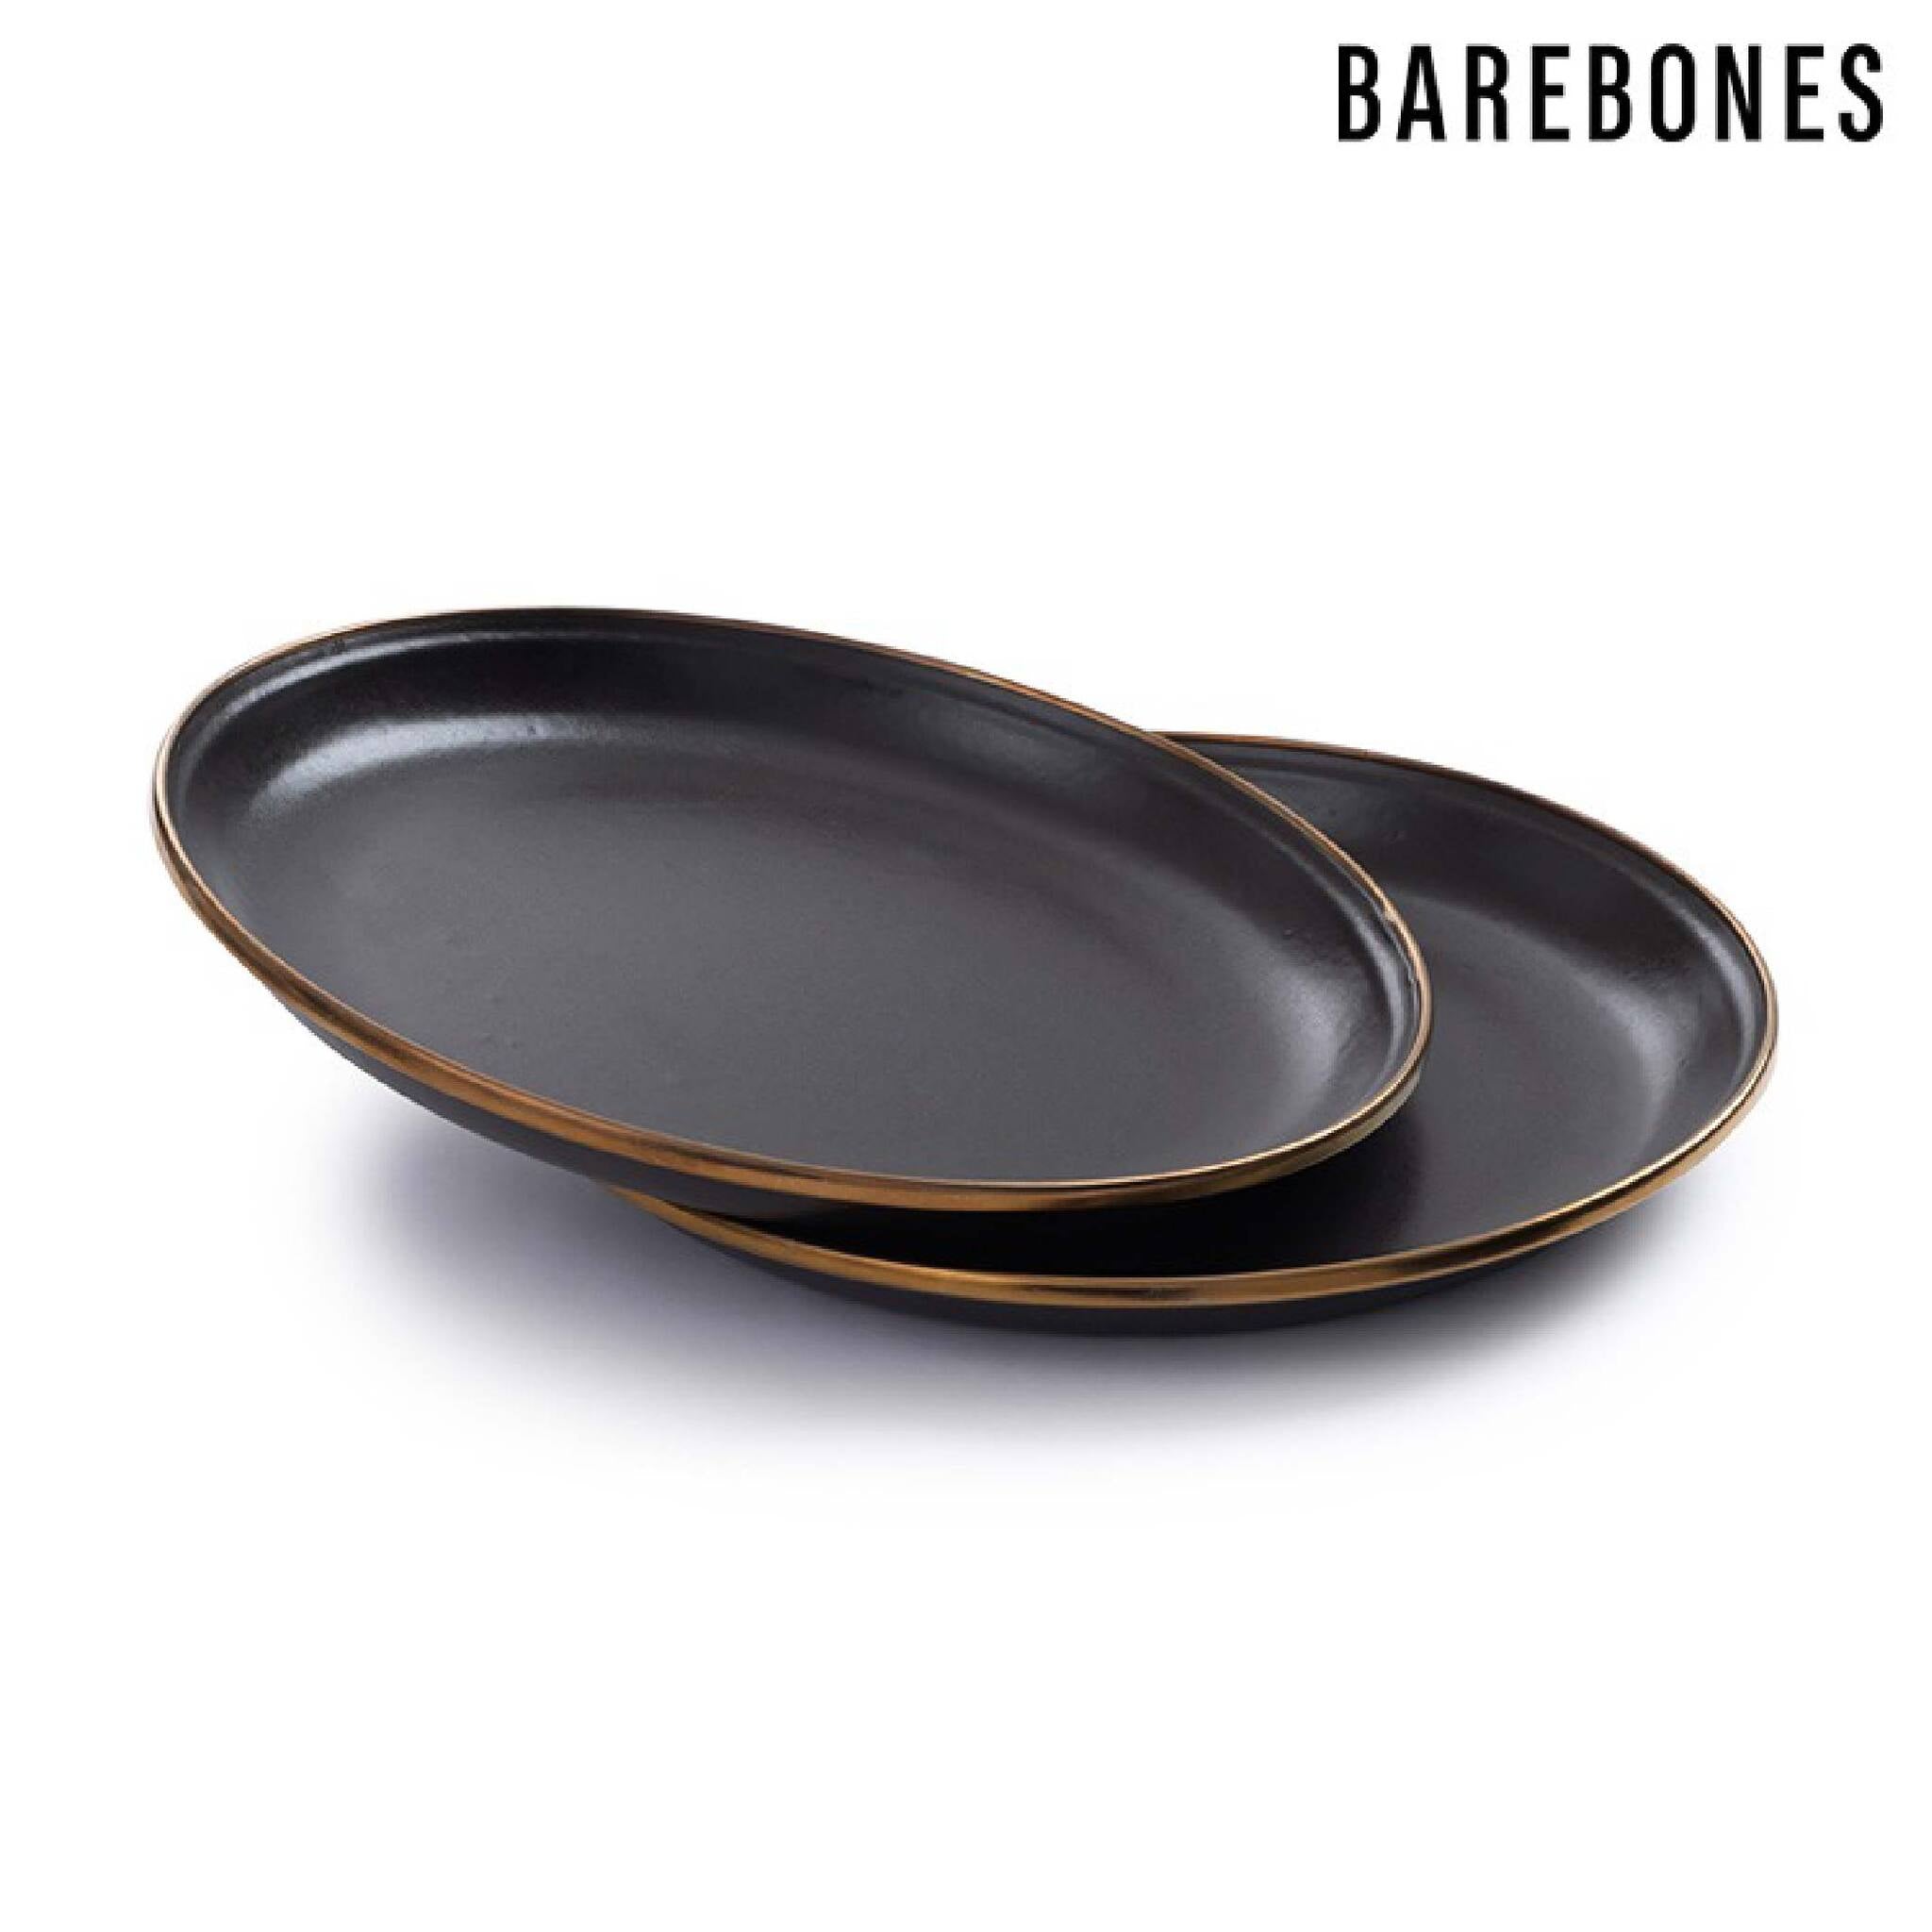 Barebones 琺瑯沙拉盤組 兩入一組 炭灰 CKW-342